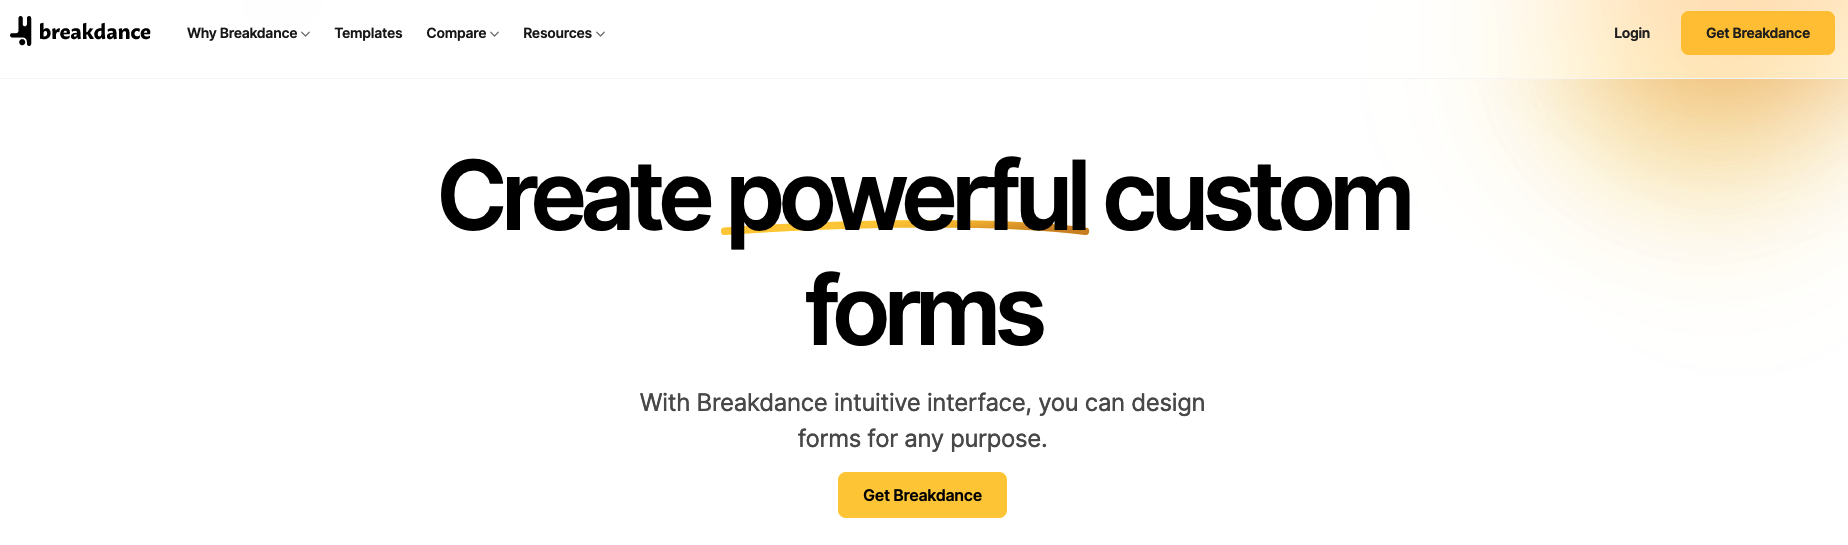 Breakdance homepage